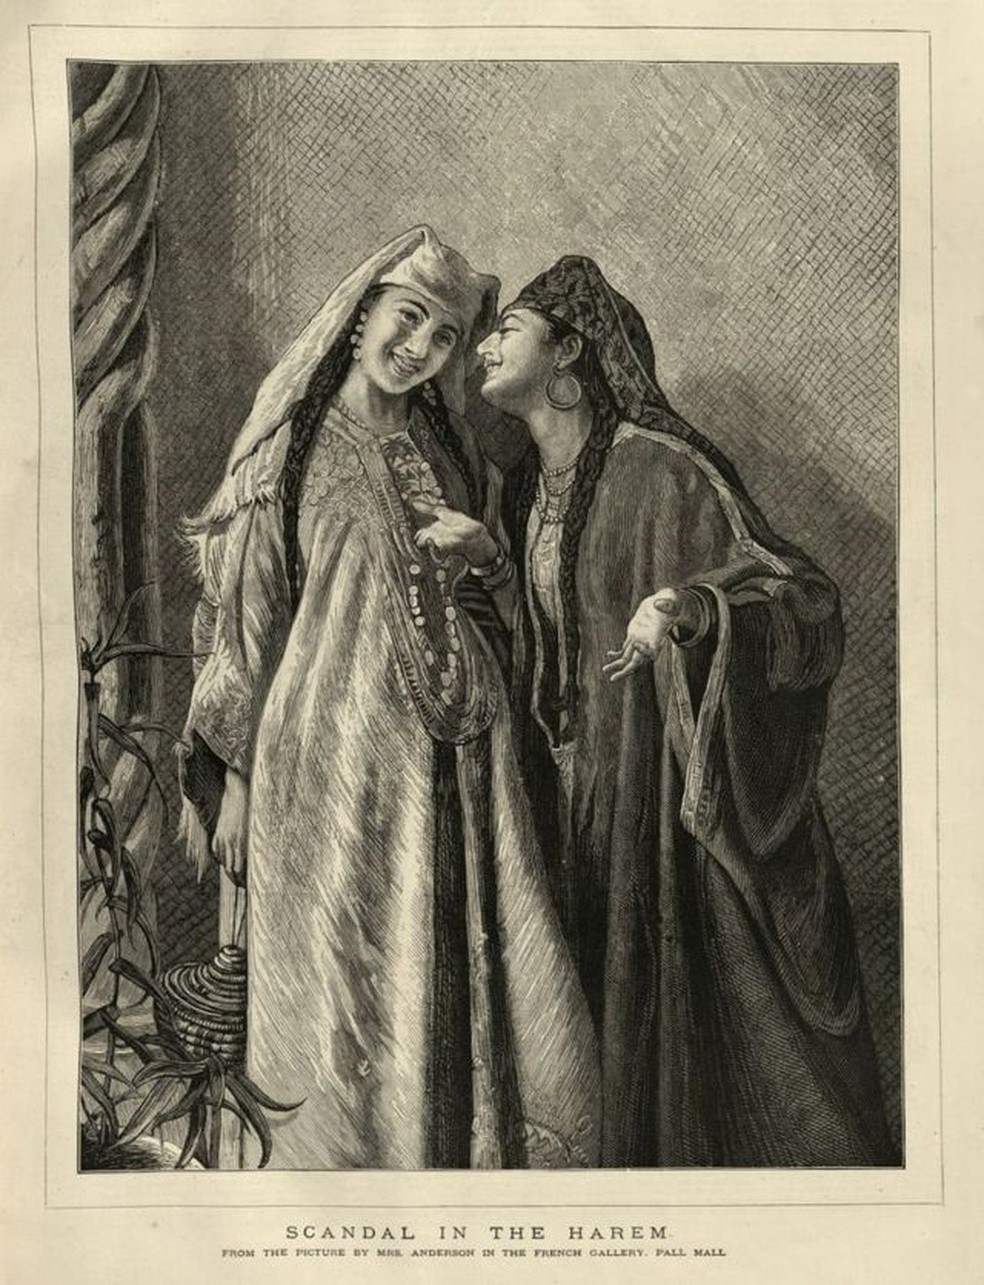 Mulheres em um harém do Império Otomano, em ilustração de 1877 — Foto: GETTY IMAGES via BBC